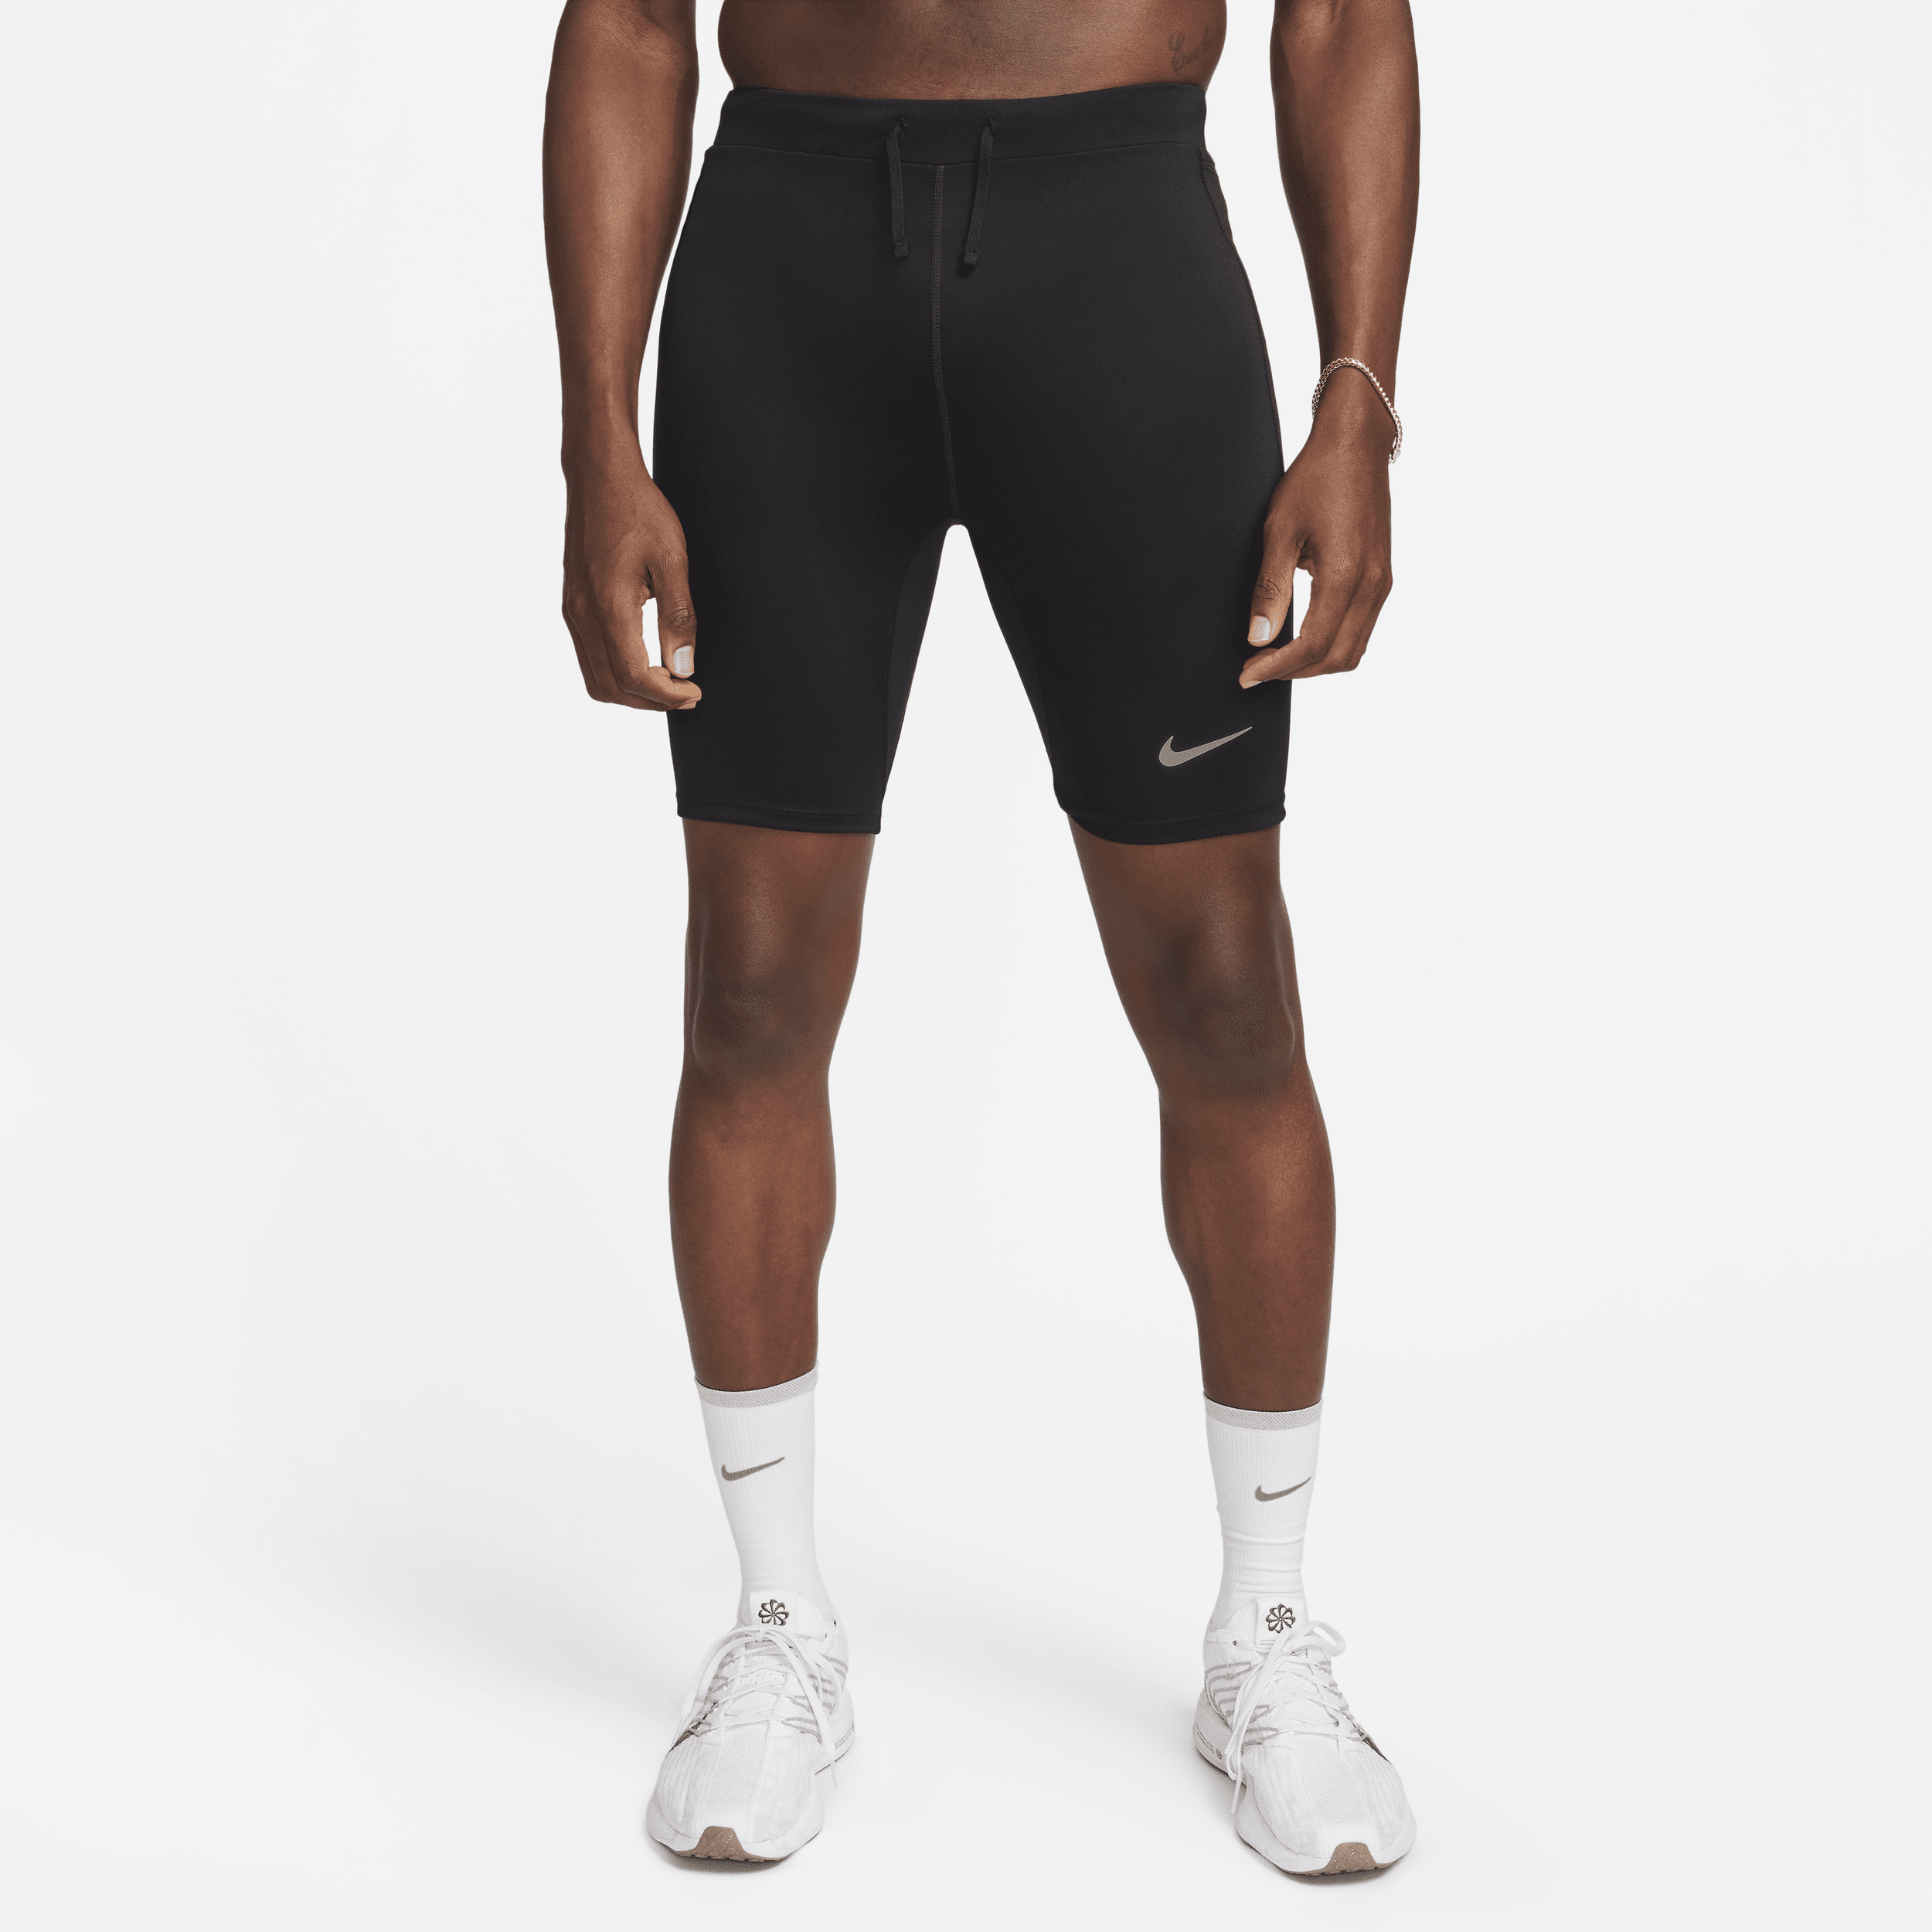 Tights da running a metà lunghezza con slip foderato Dri-FIT Nike Fast – Uomo - Nero